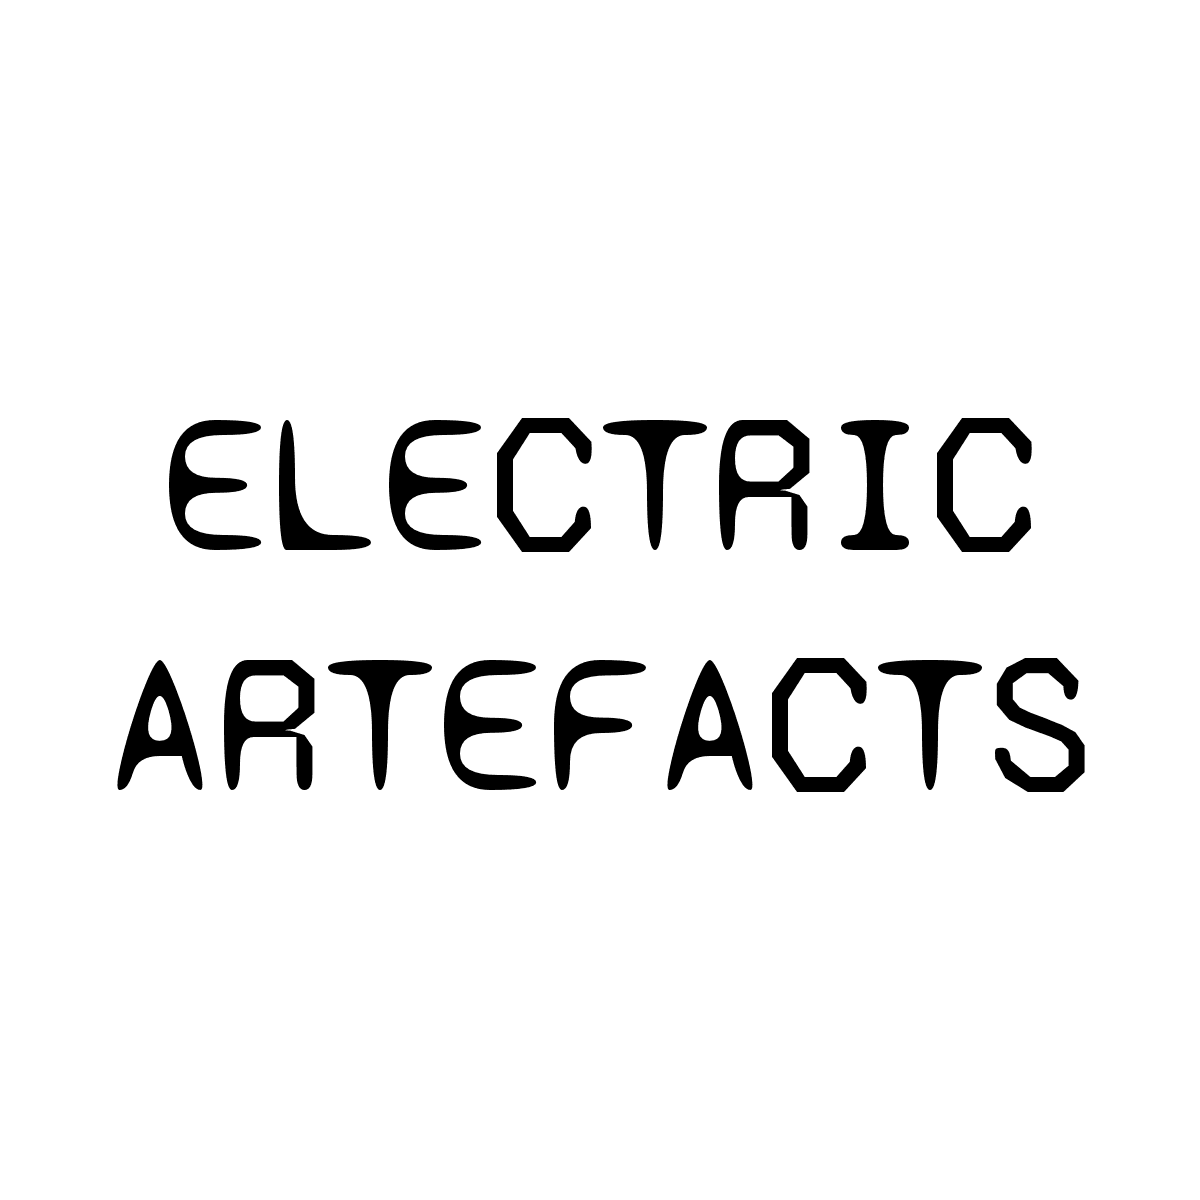 ElectricArtefacts